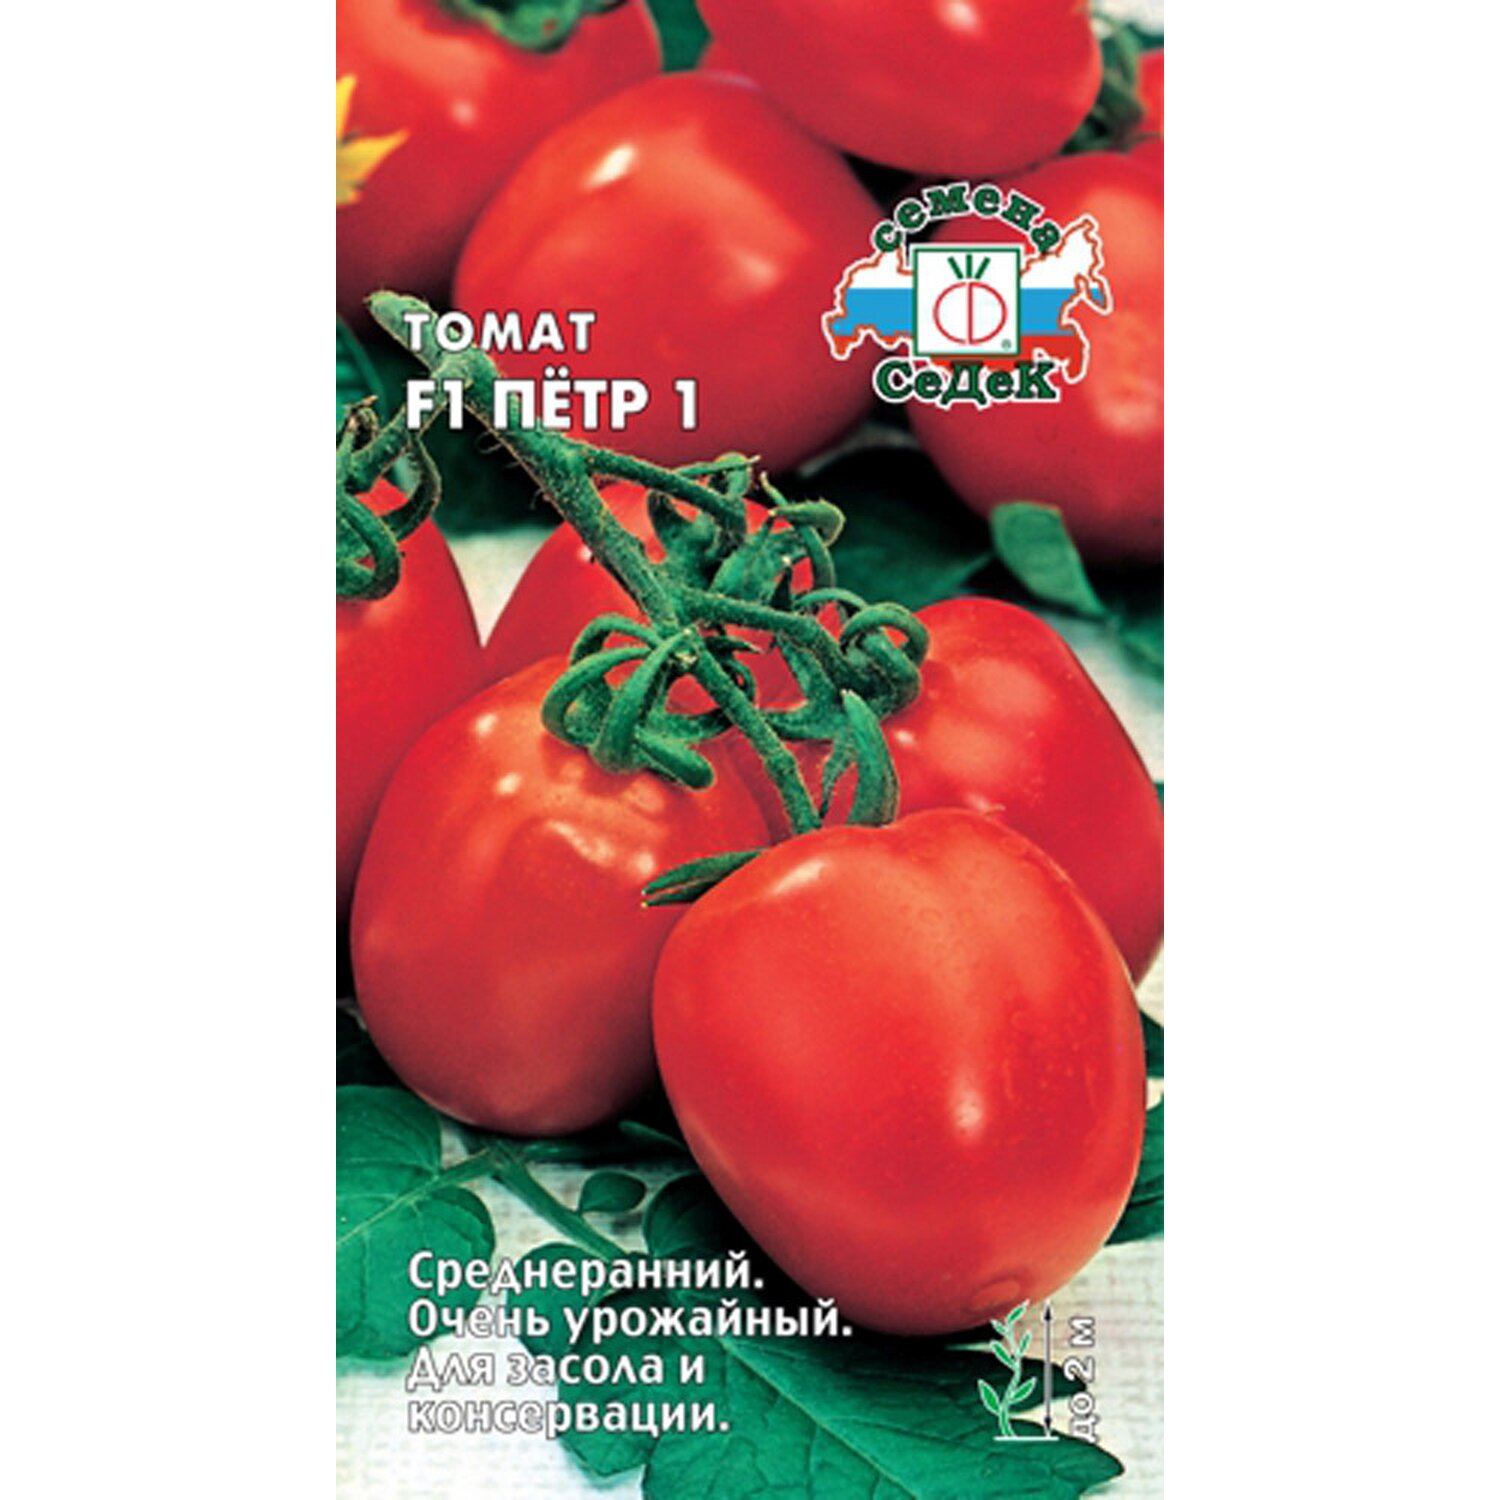 Томат "союз 8" f1: описание и характеристики гибридных помидоров русский фермер